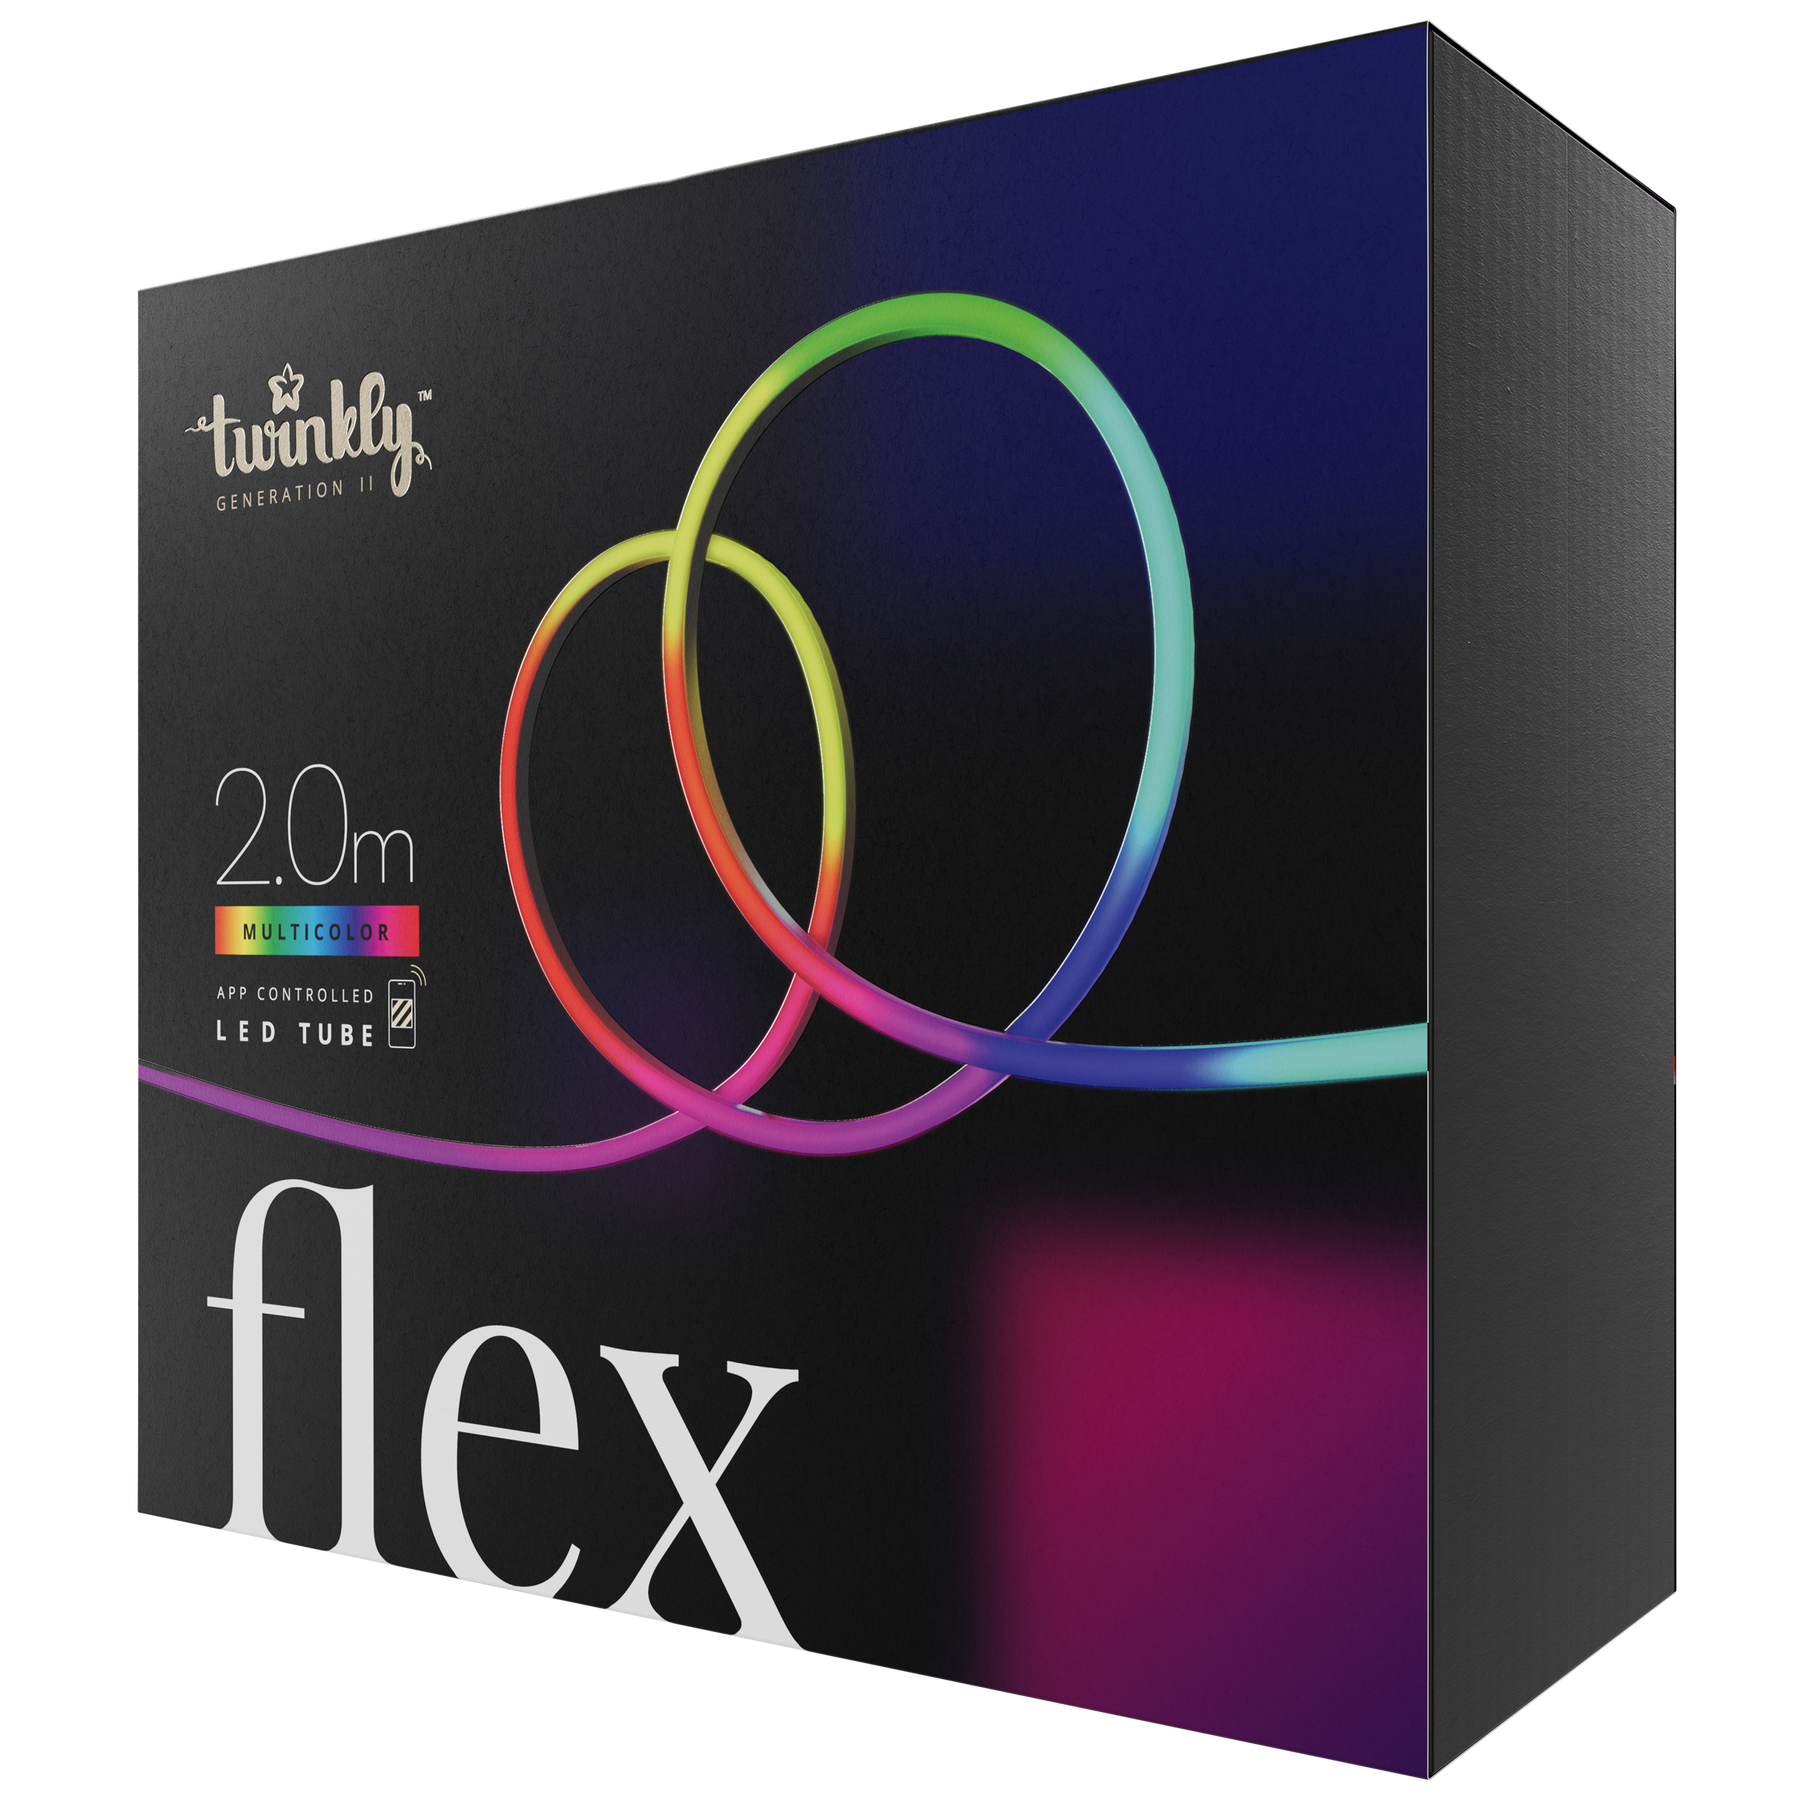 Flex (flerfarvet udgave)